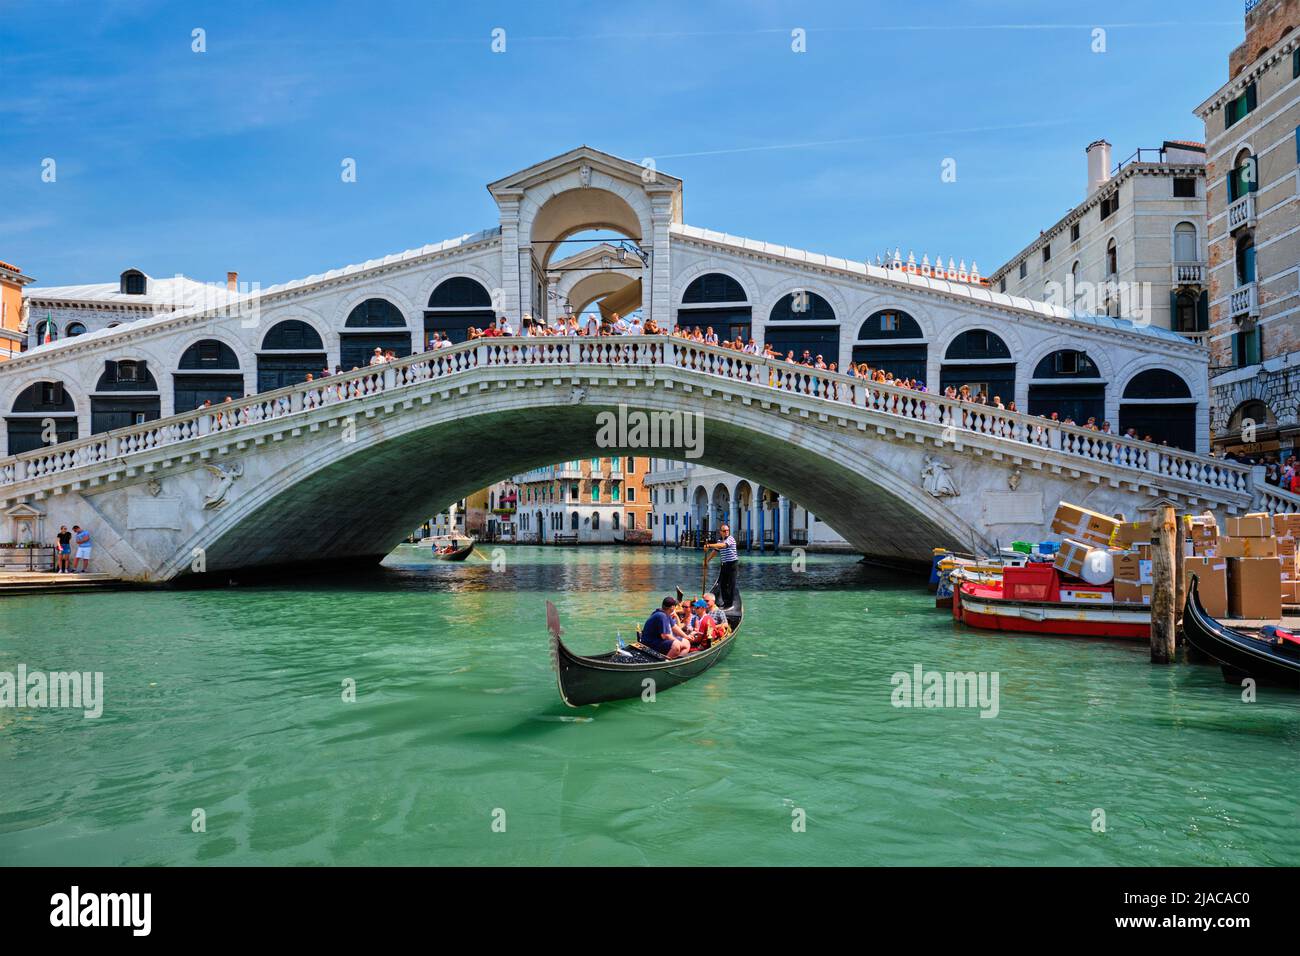 Rialto bridge with boats and gondolas. Grand Canal, Venice, Italy Stock Photo